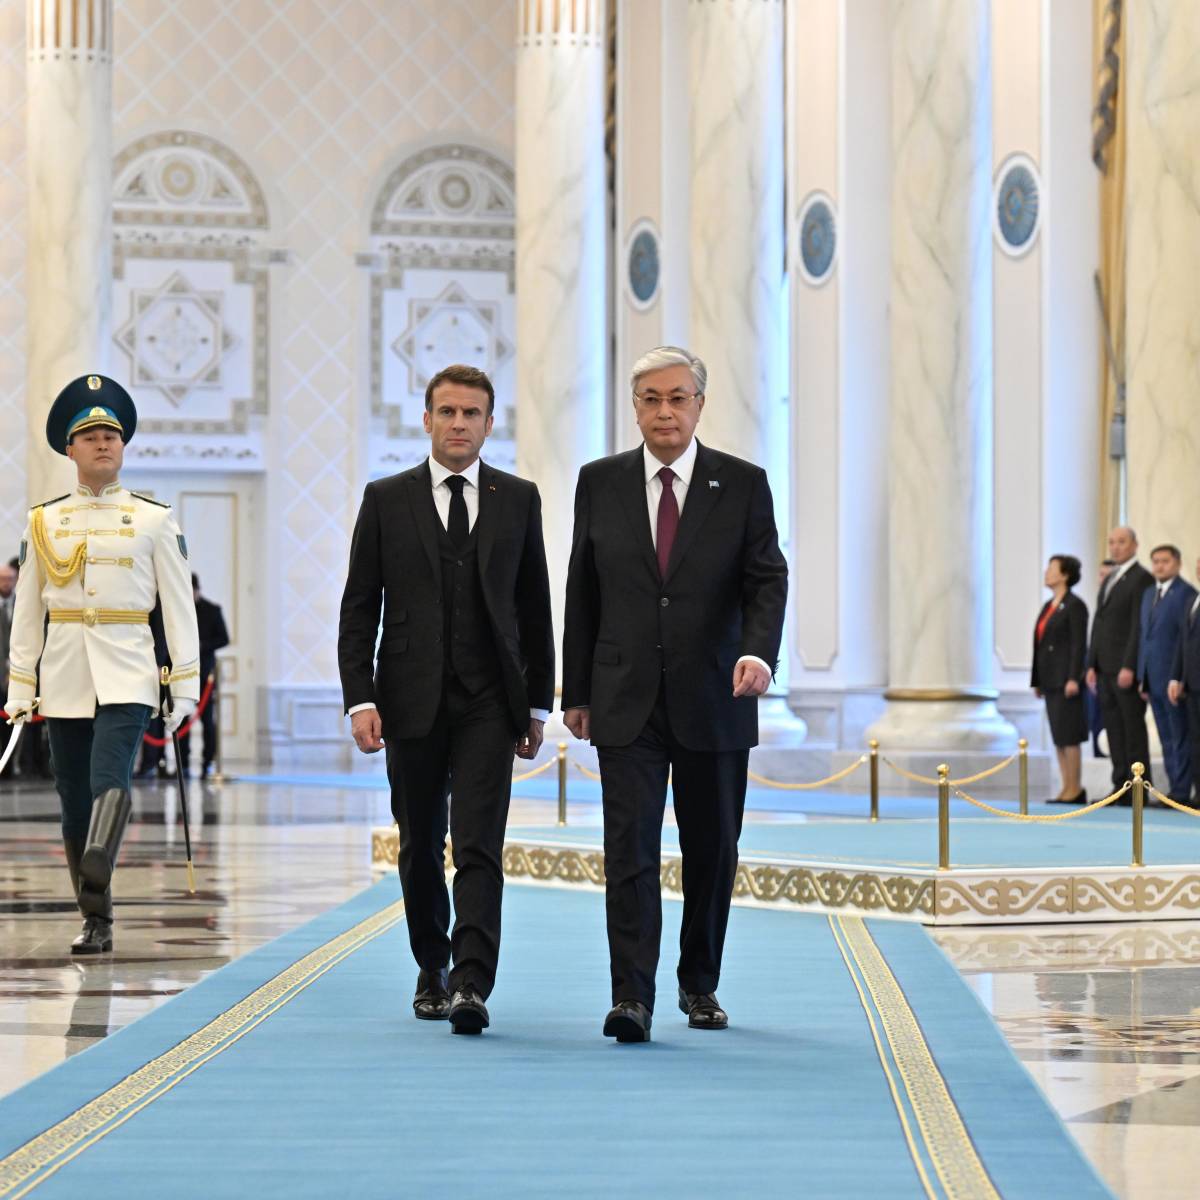 Что будет делать президент Франции в Центральной Азии?